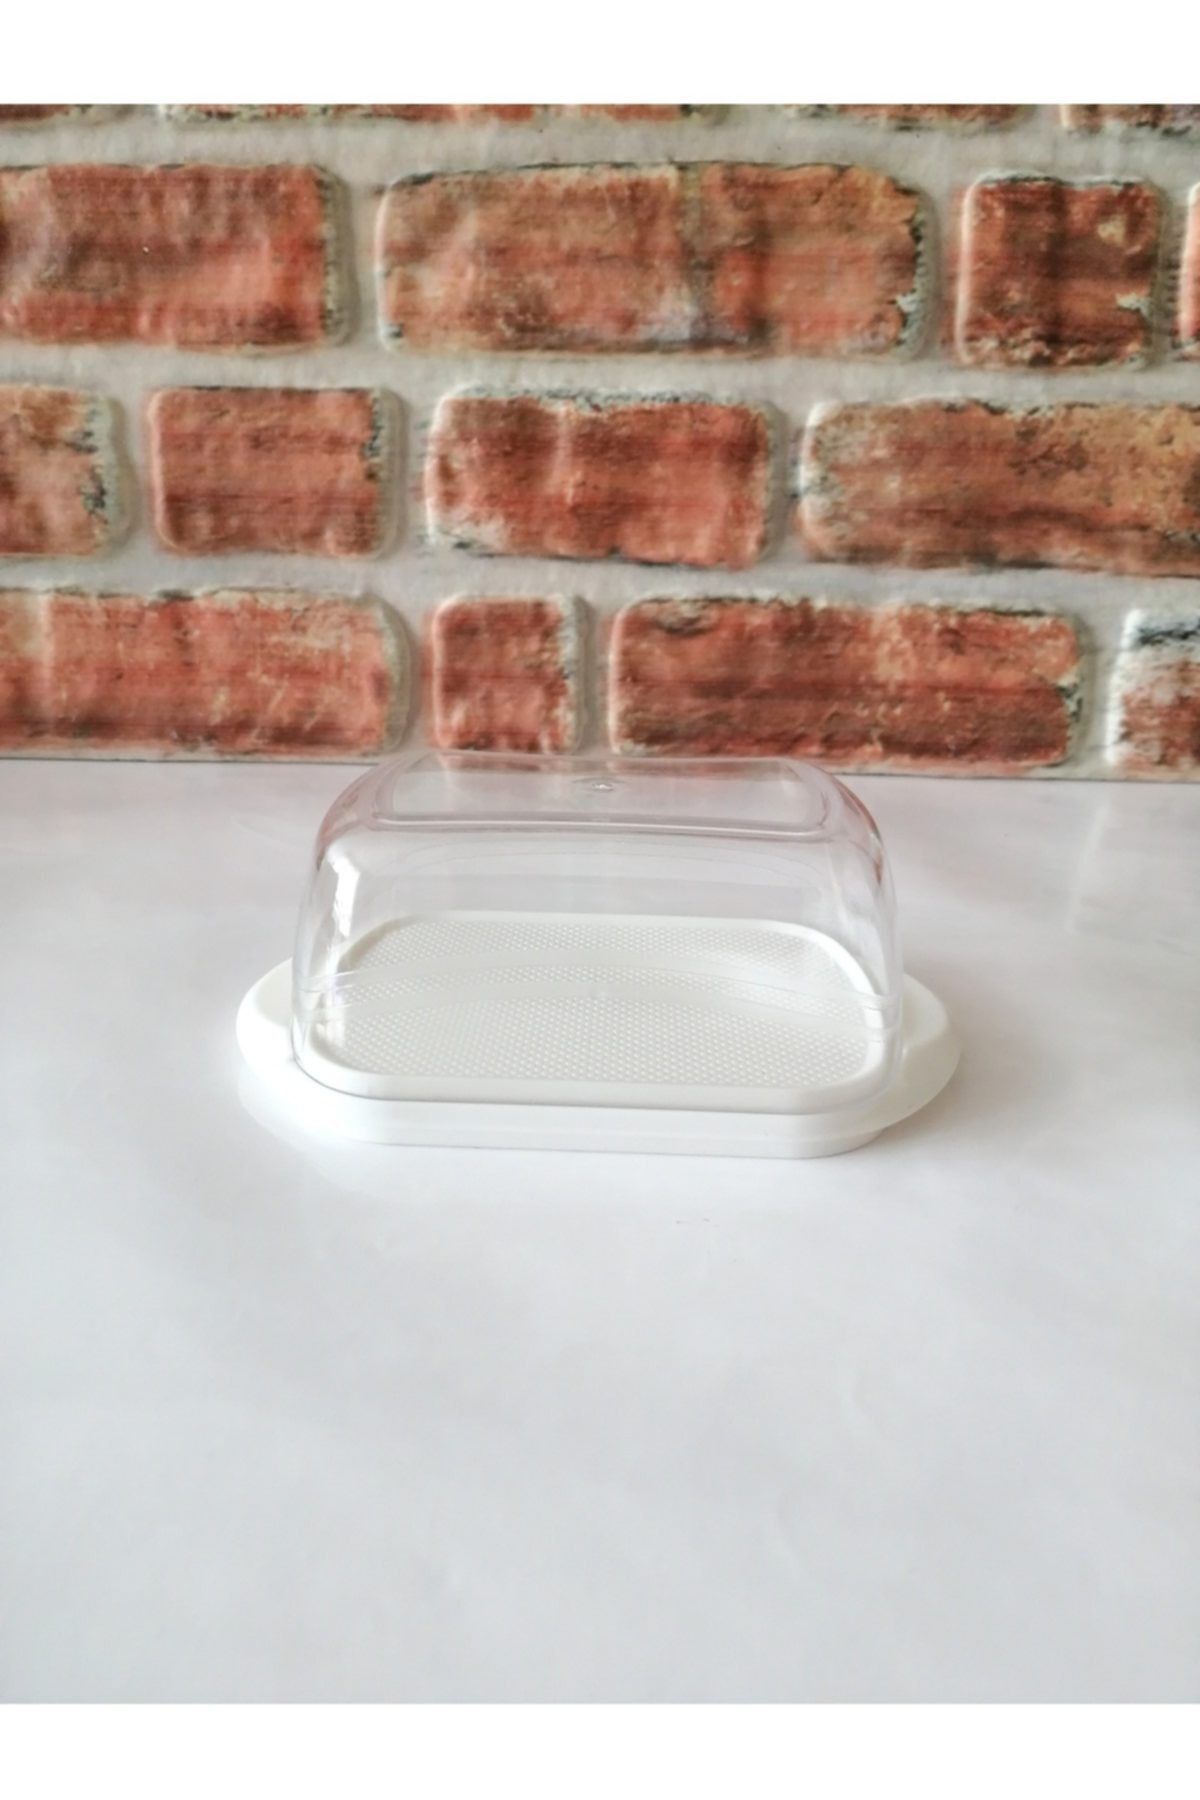 HOBBY LİFE Şeffaf Sert Plastik Kapaklı Tereyağlık - Peynir Saklama Kutusu